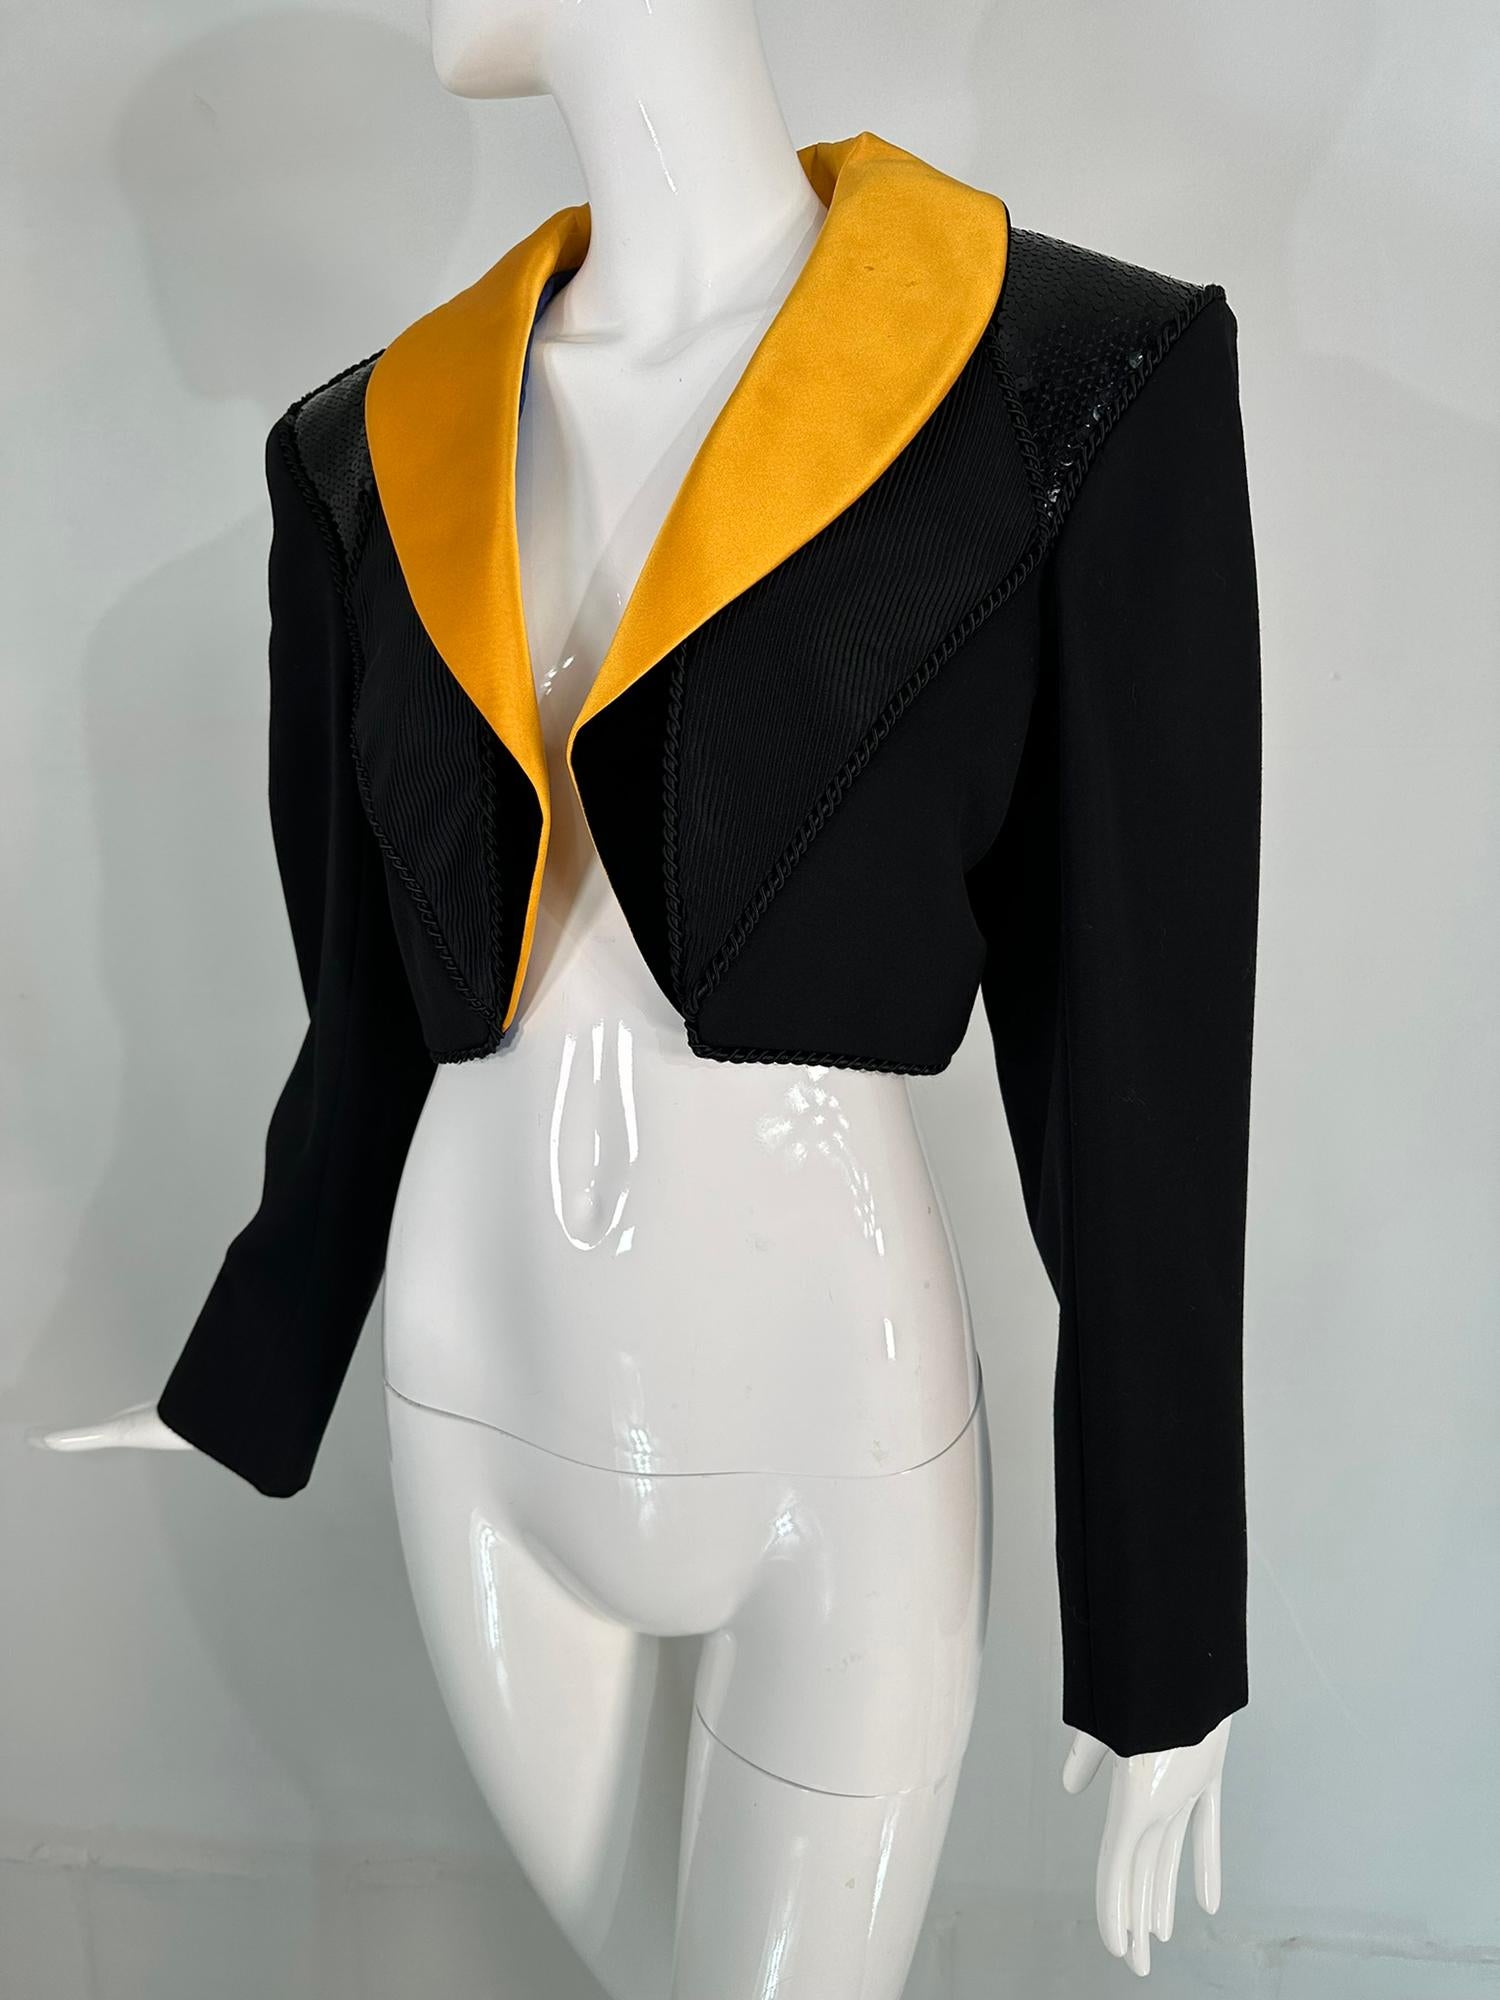  Yves Saint Laurent Rive Gauche gabardine noire cropped  du début des années 1990. Cette belle veste a un col châle en satin jaune-orange vif,  Doublée de satin bleu vif, la combinaison est éclatante. Fine gabardine de laine noire la veste a des